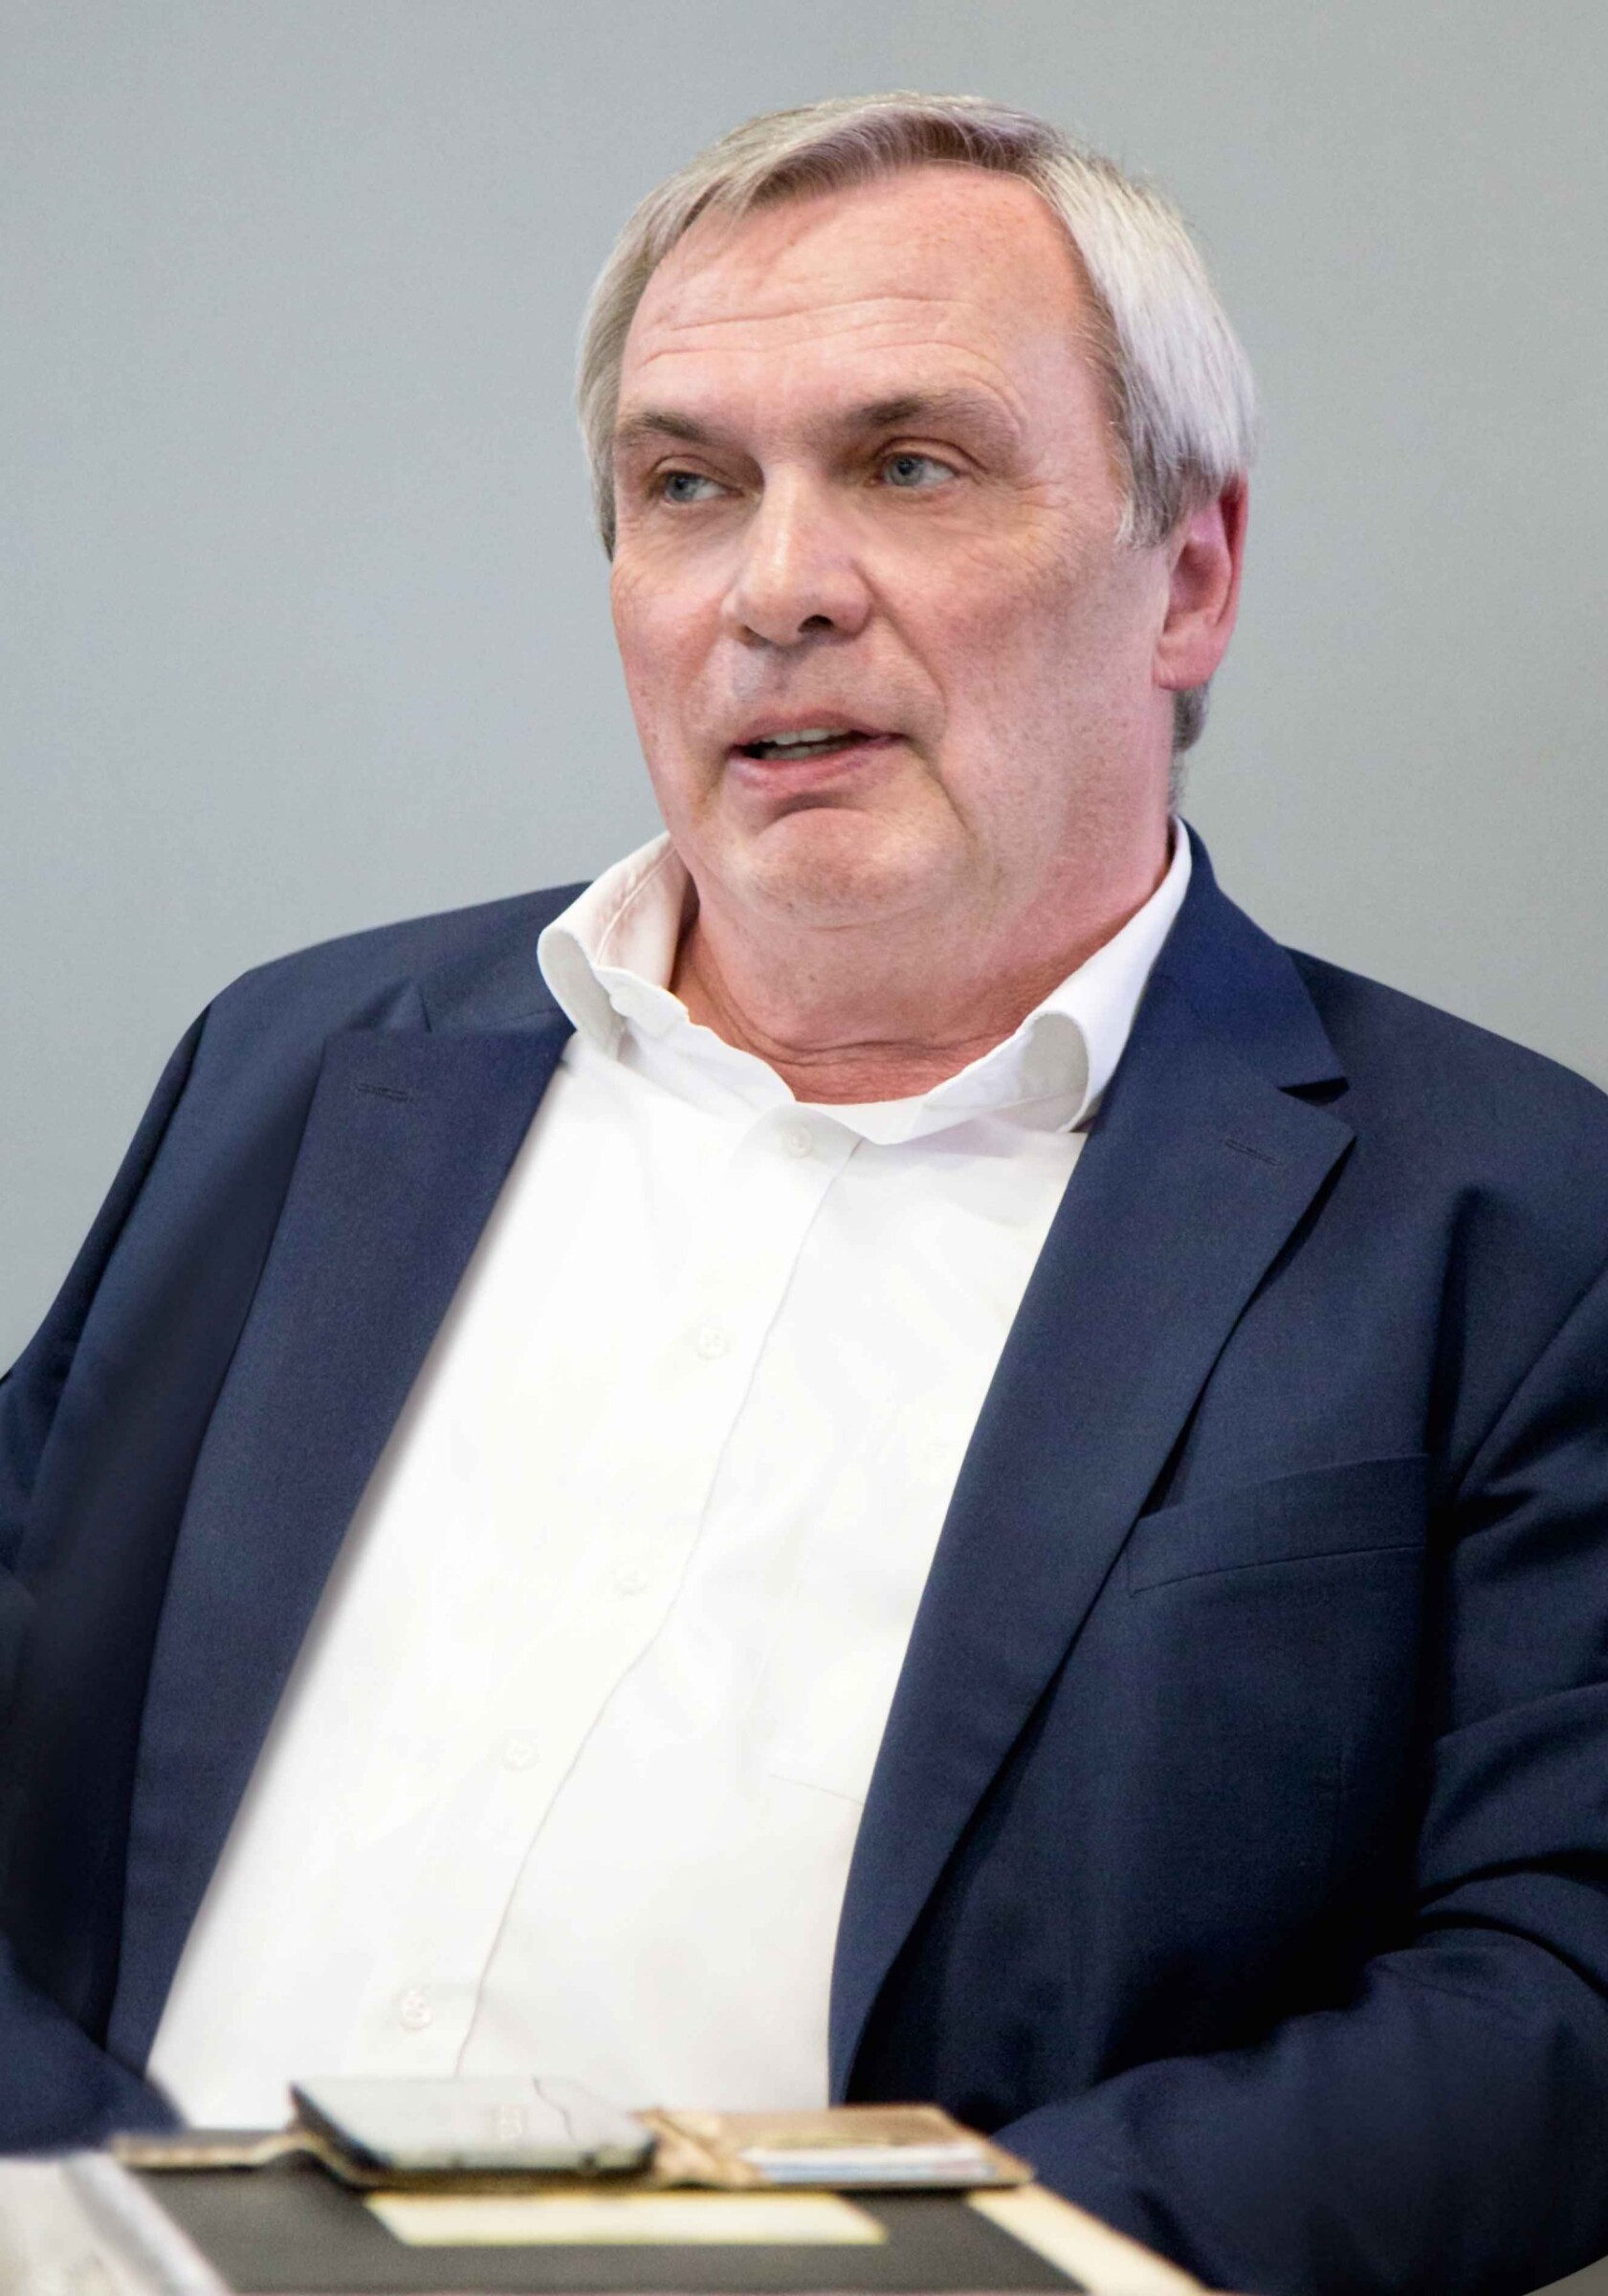 Detlef M. Büll, als Geschäftsführer des Handelshauses Büll & Strunz in Österreich regionaler Repräsentant für Mitsubishi Electric